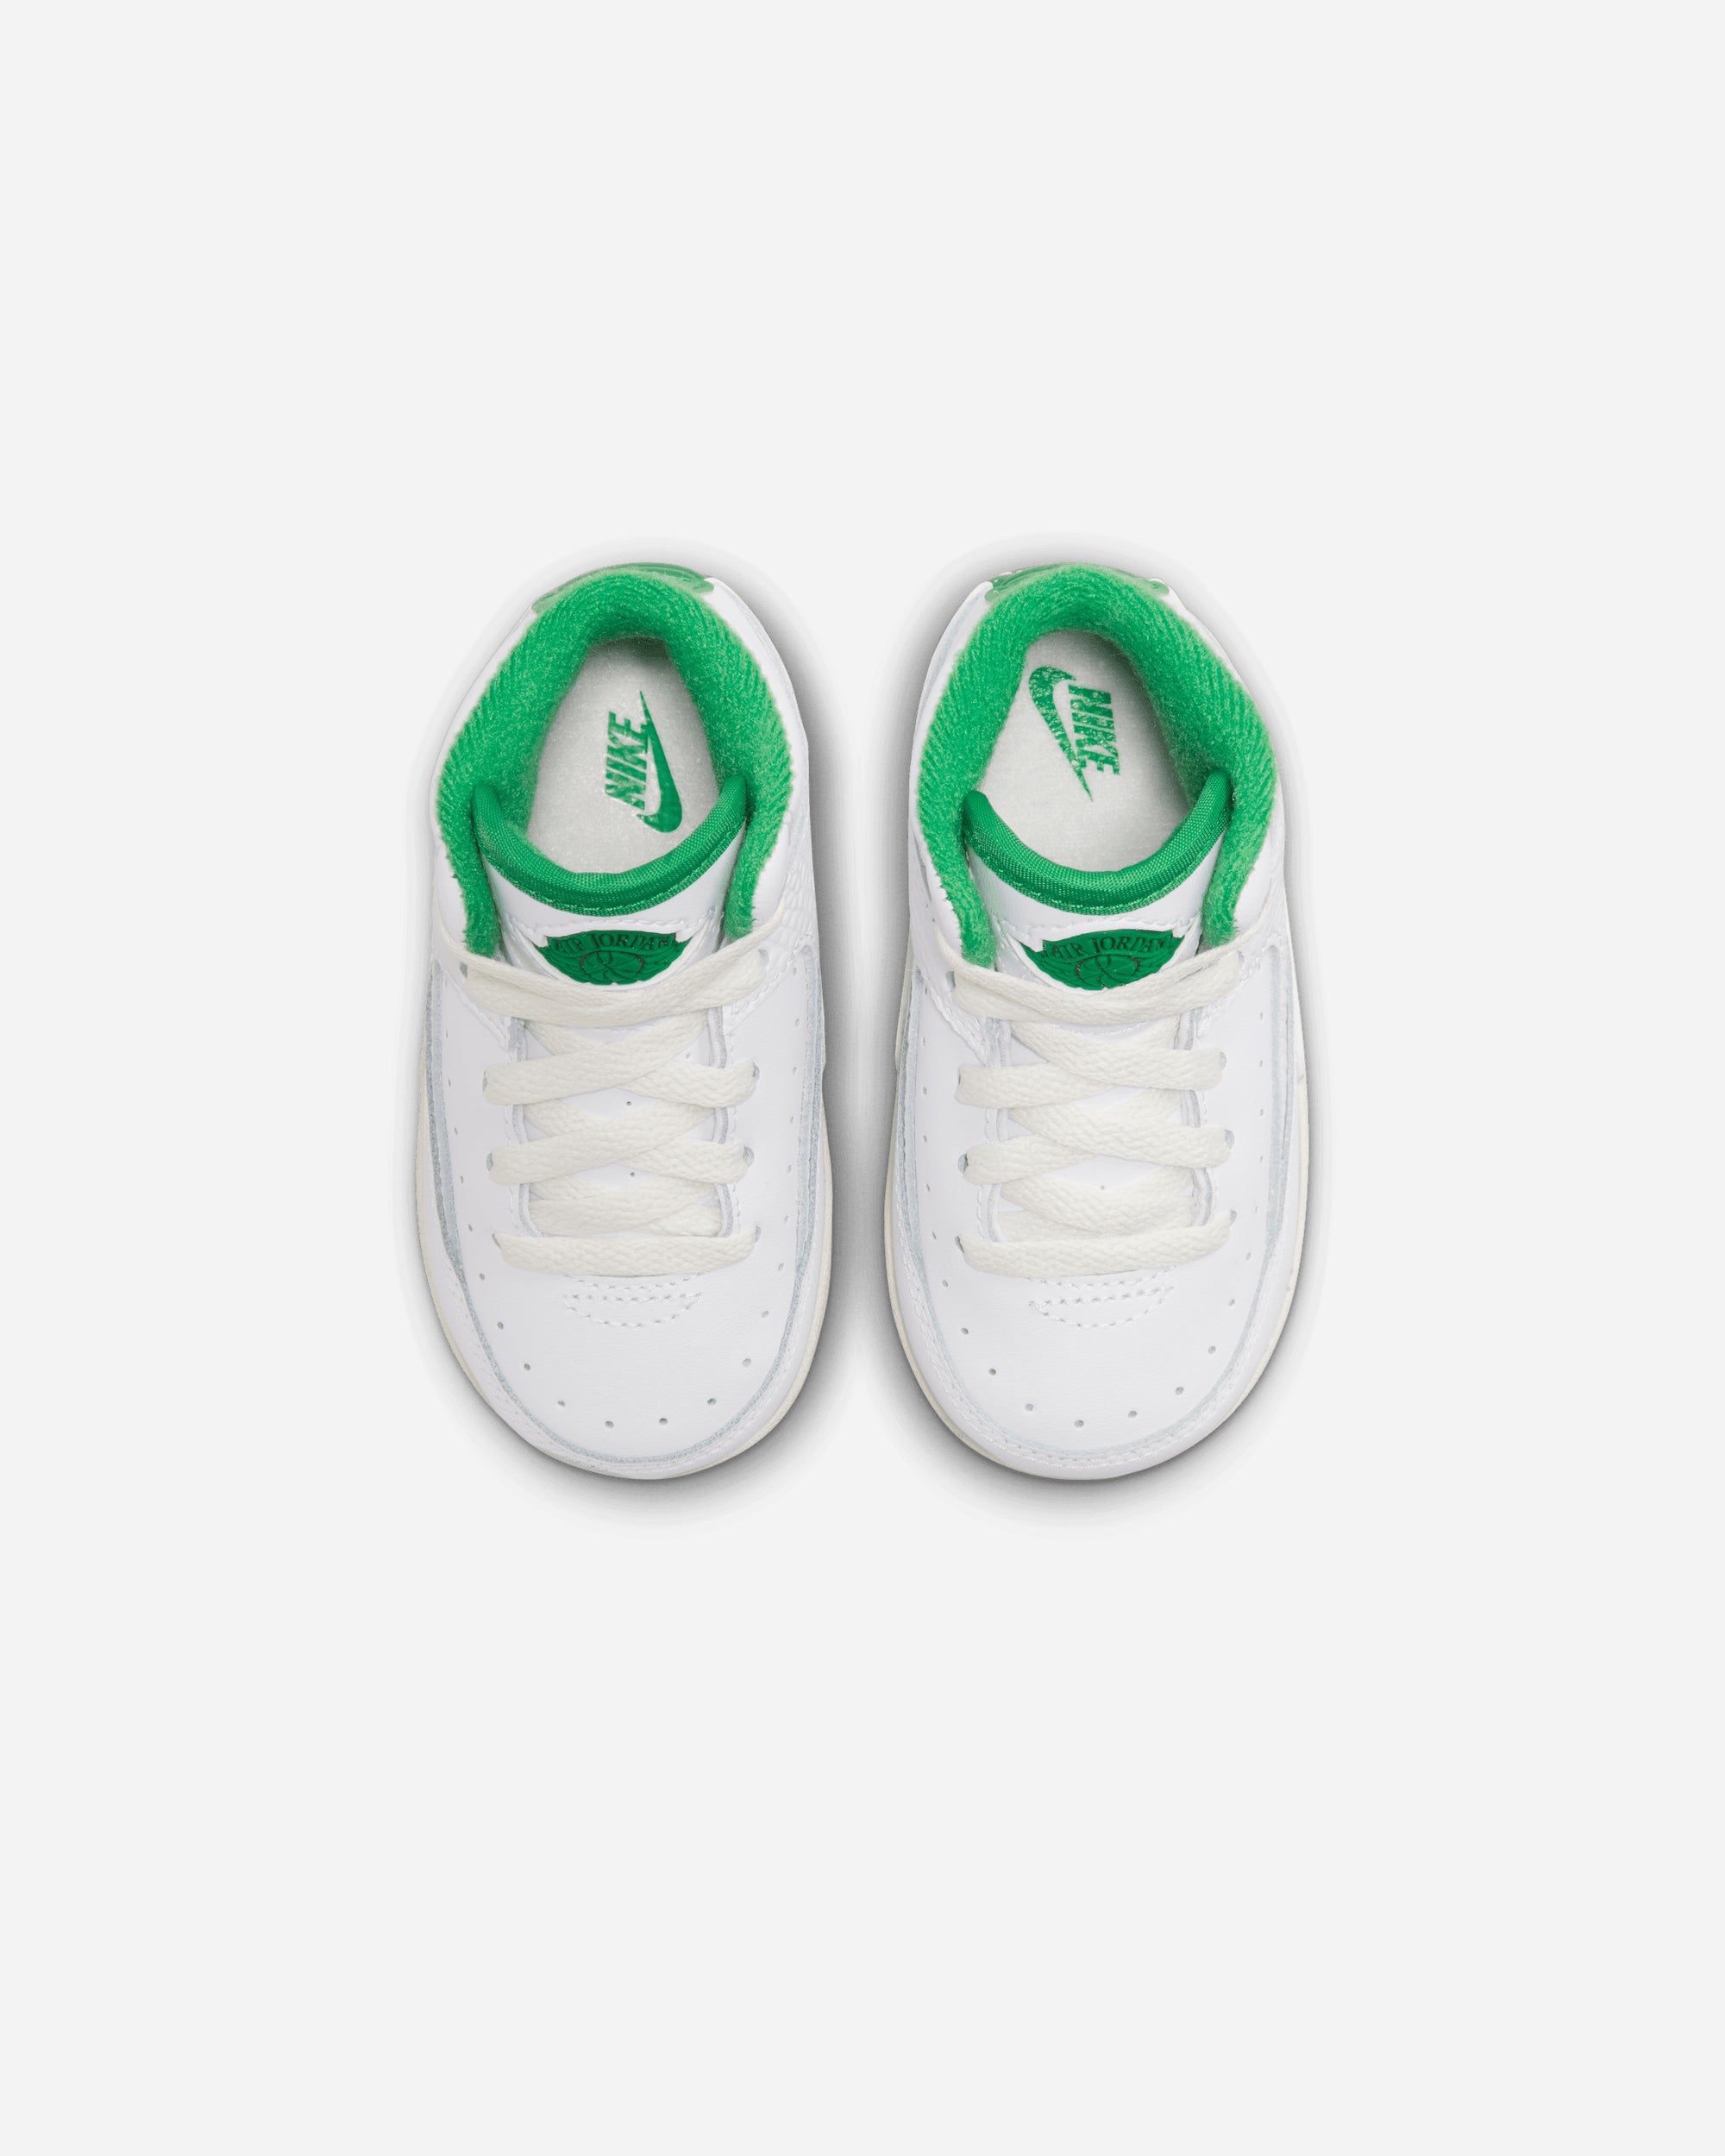 Jordan Brand Jordan 2 Retro 'Lucky Green' (Toddler) WHITE/LUCKY GREEN-SAIL-LT DQ8563-103